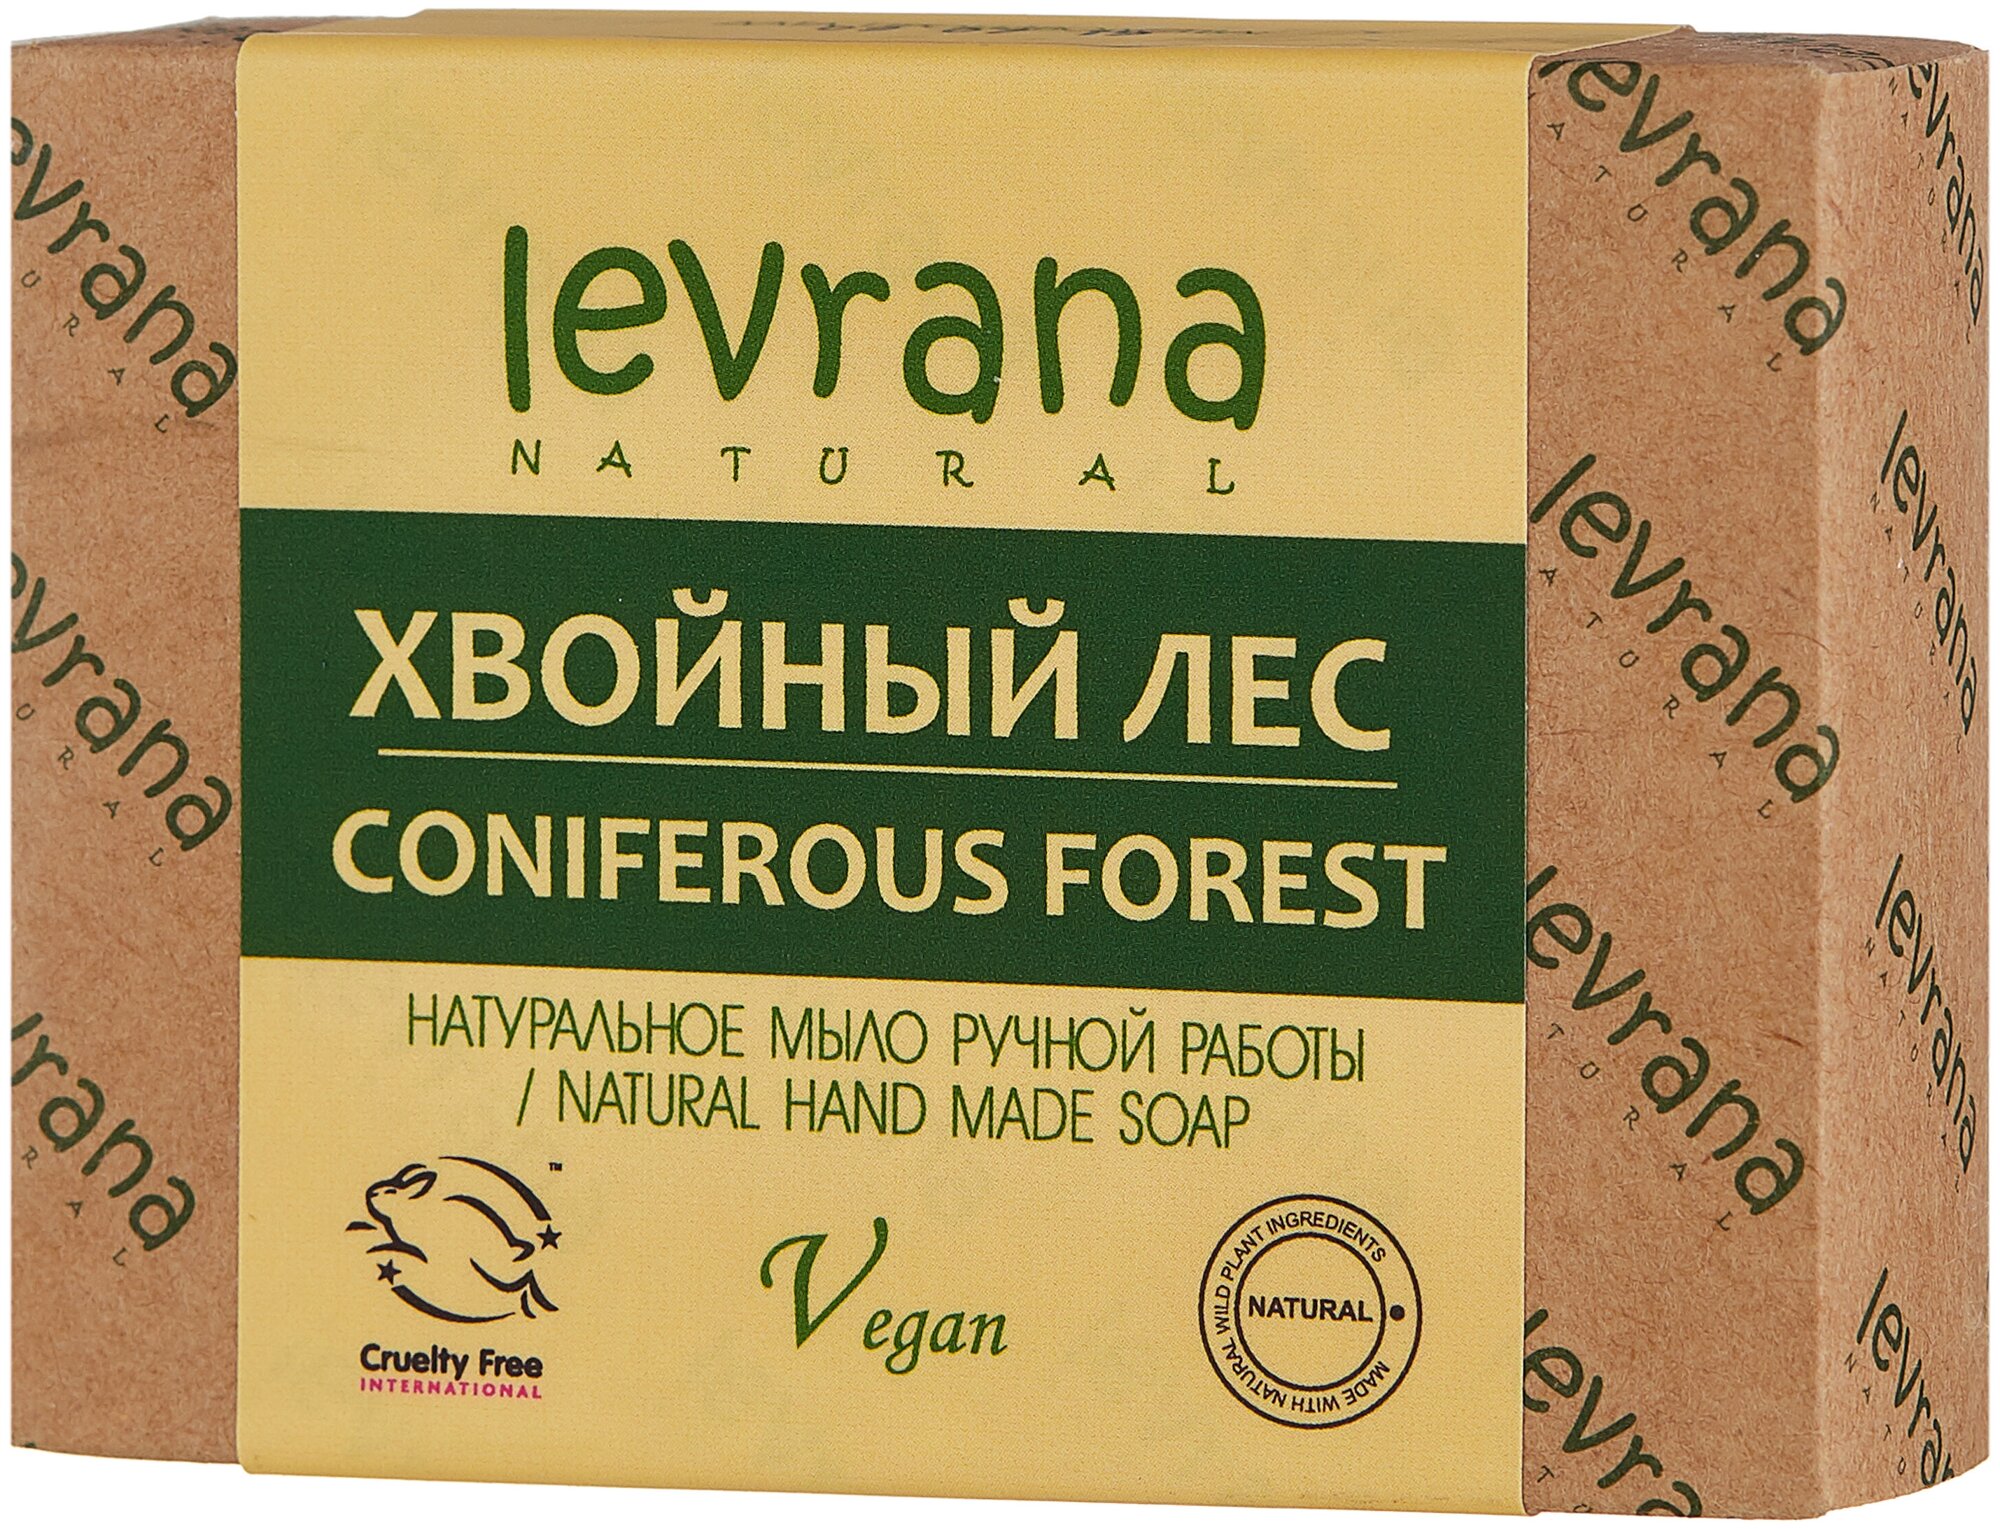 Levrana Натуральное мыло ручной работы "Хвойный лес" 100 г